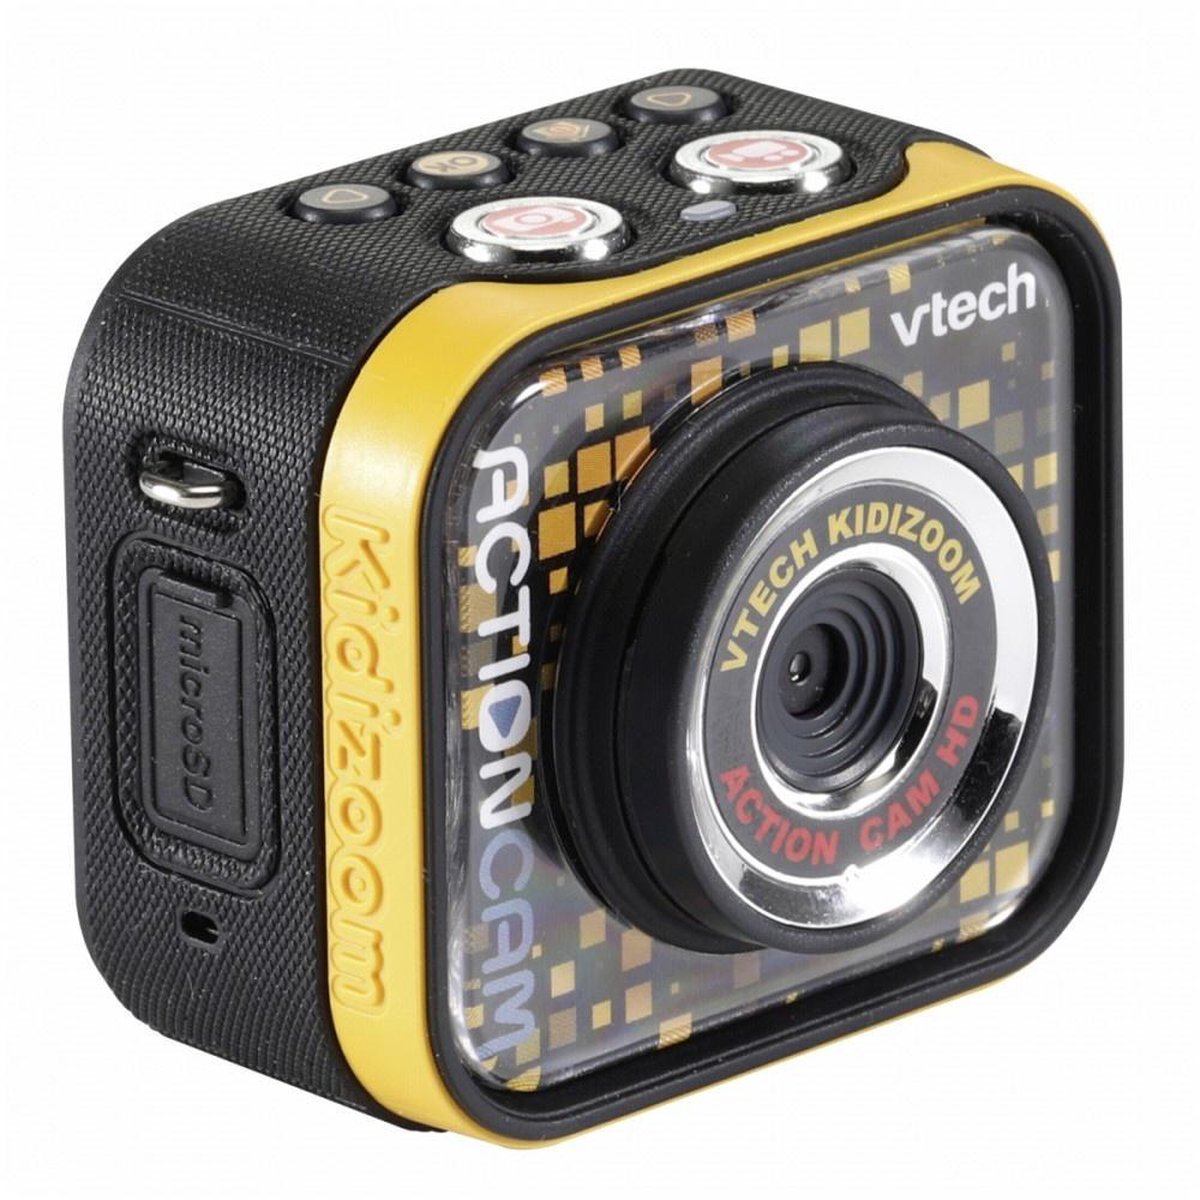 Voetganger bodem smaak VTech KidiZoom Action Cam HD - Speelcamera - Kindercamera | bol.com